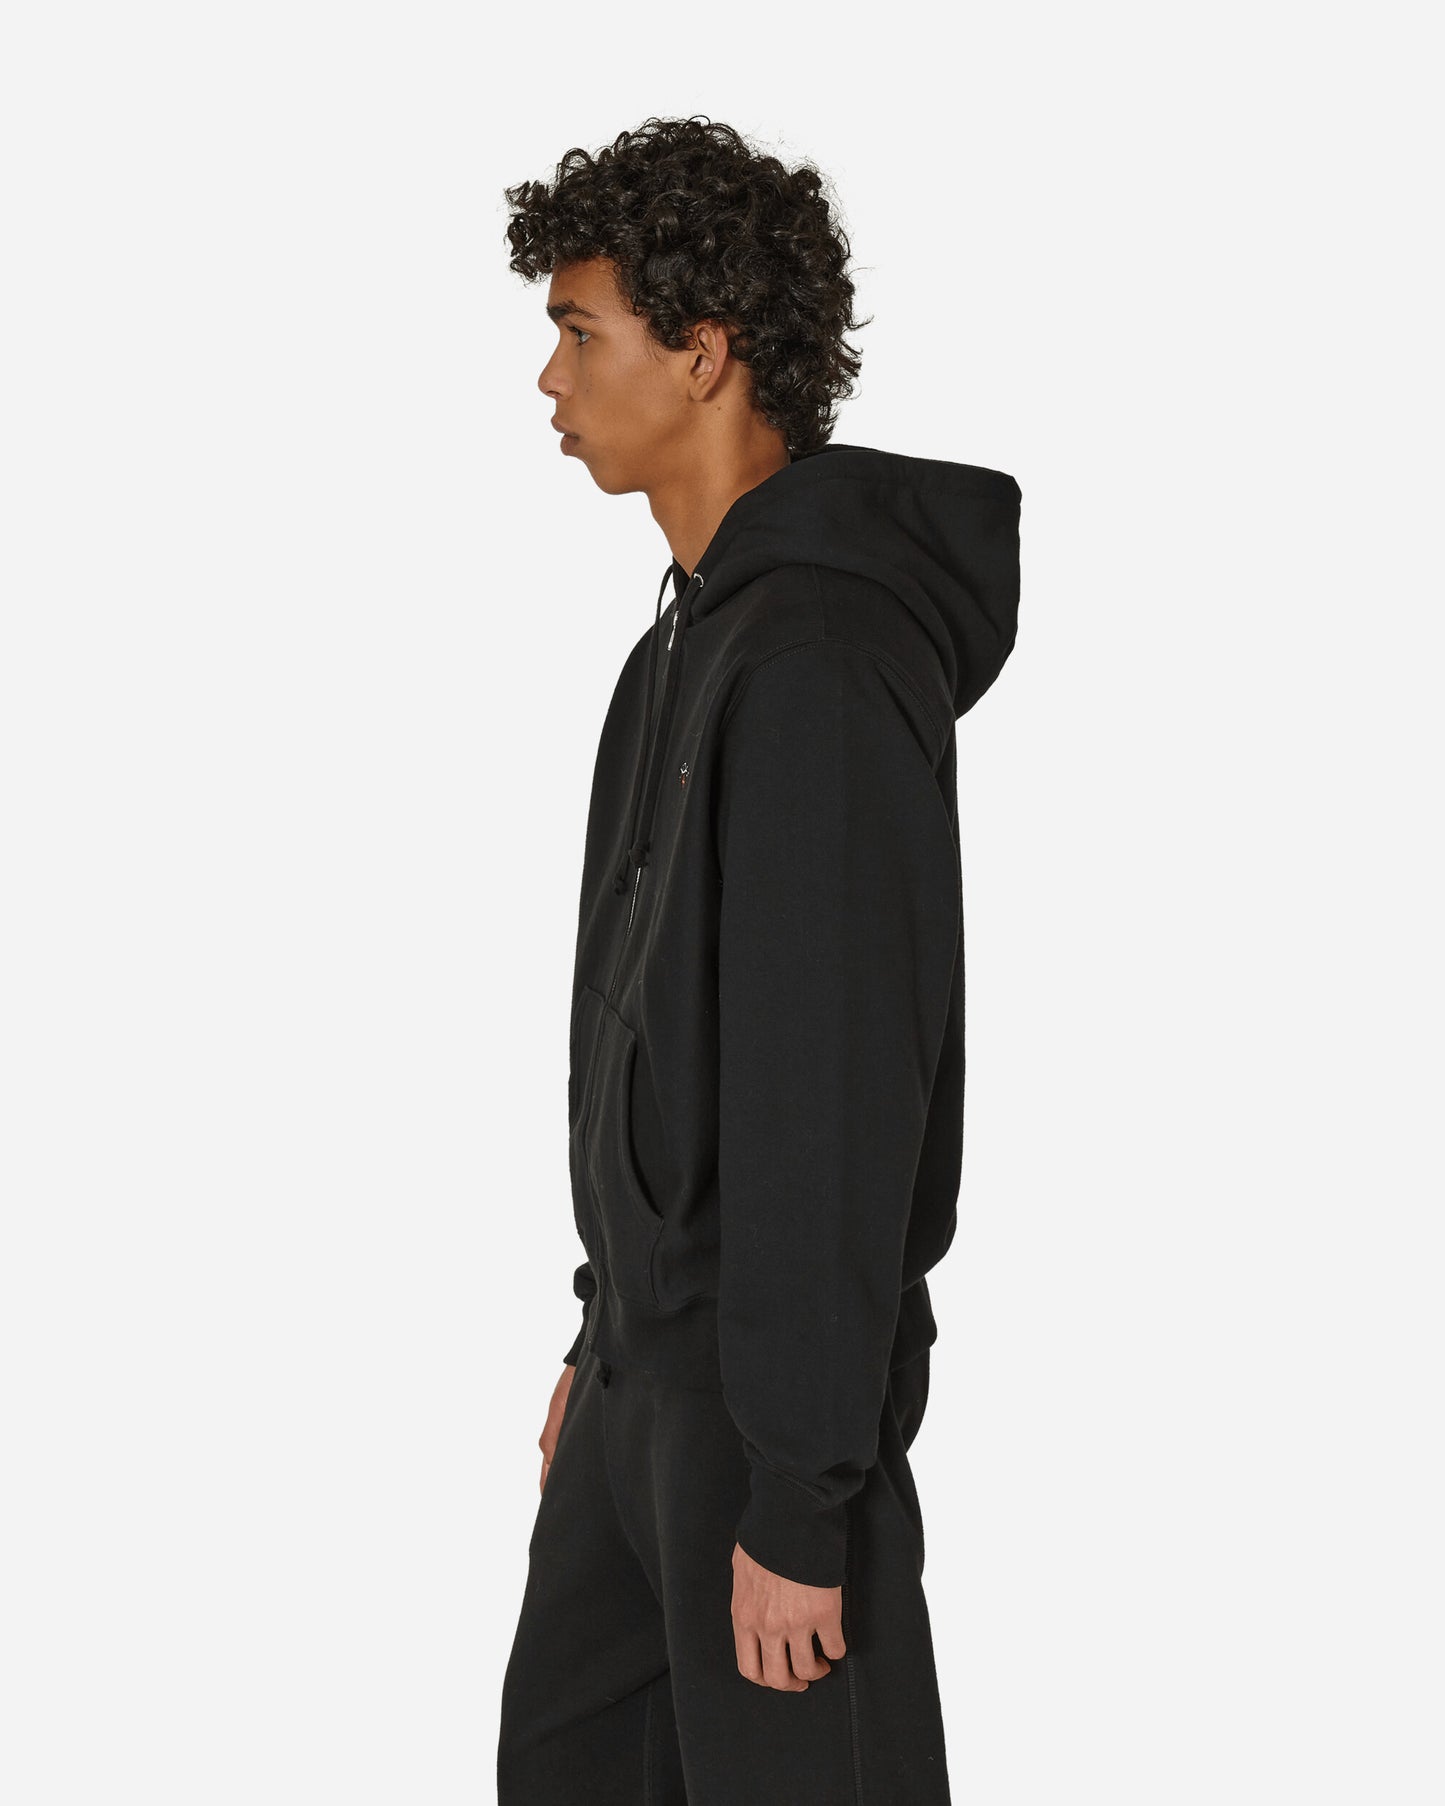 Noah Lightweight Zip-Up Black Sweatshirts Hoodies SS2NOAH BLK